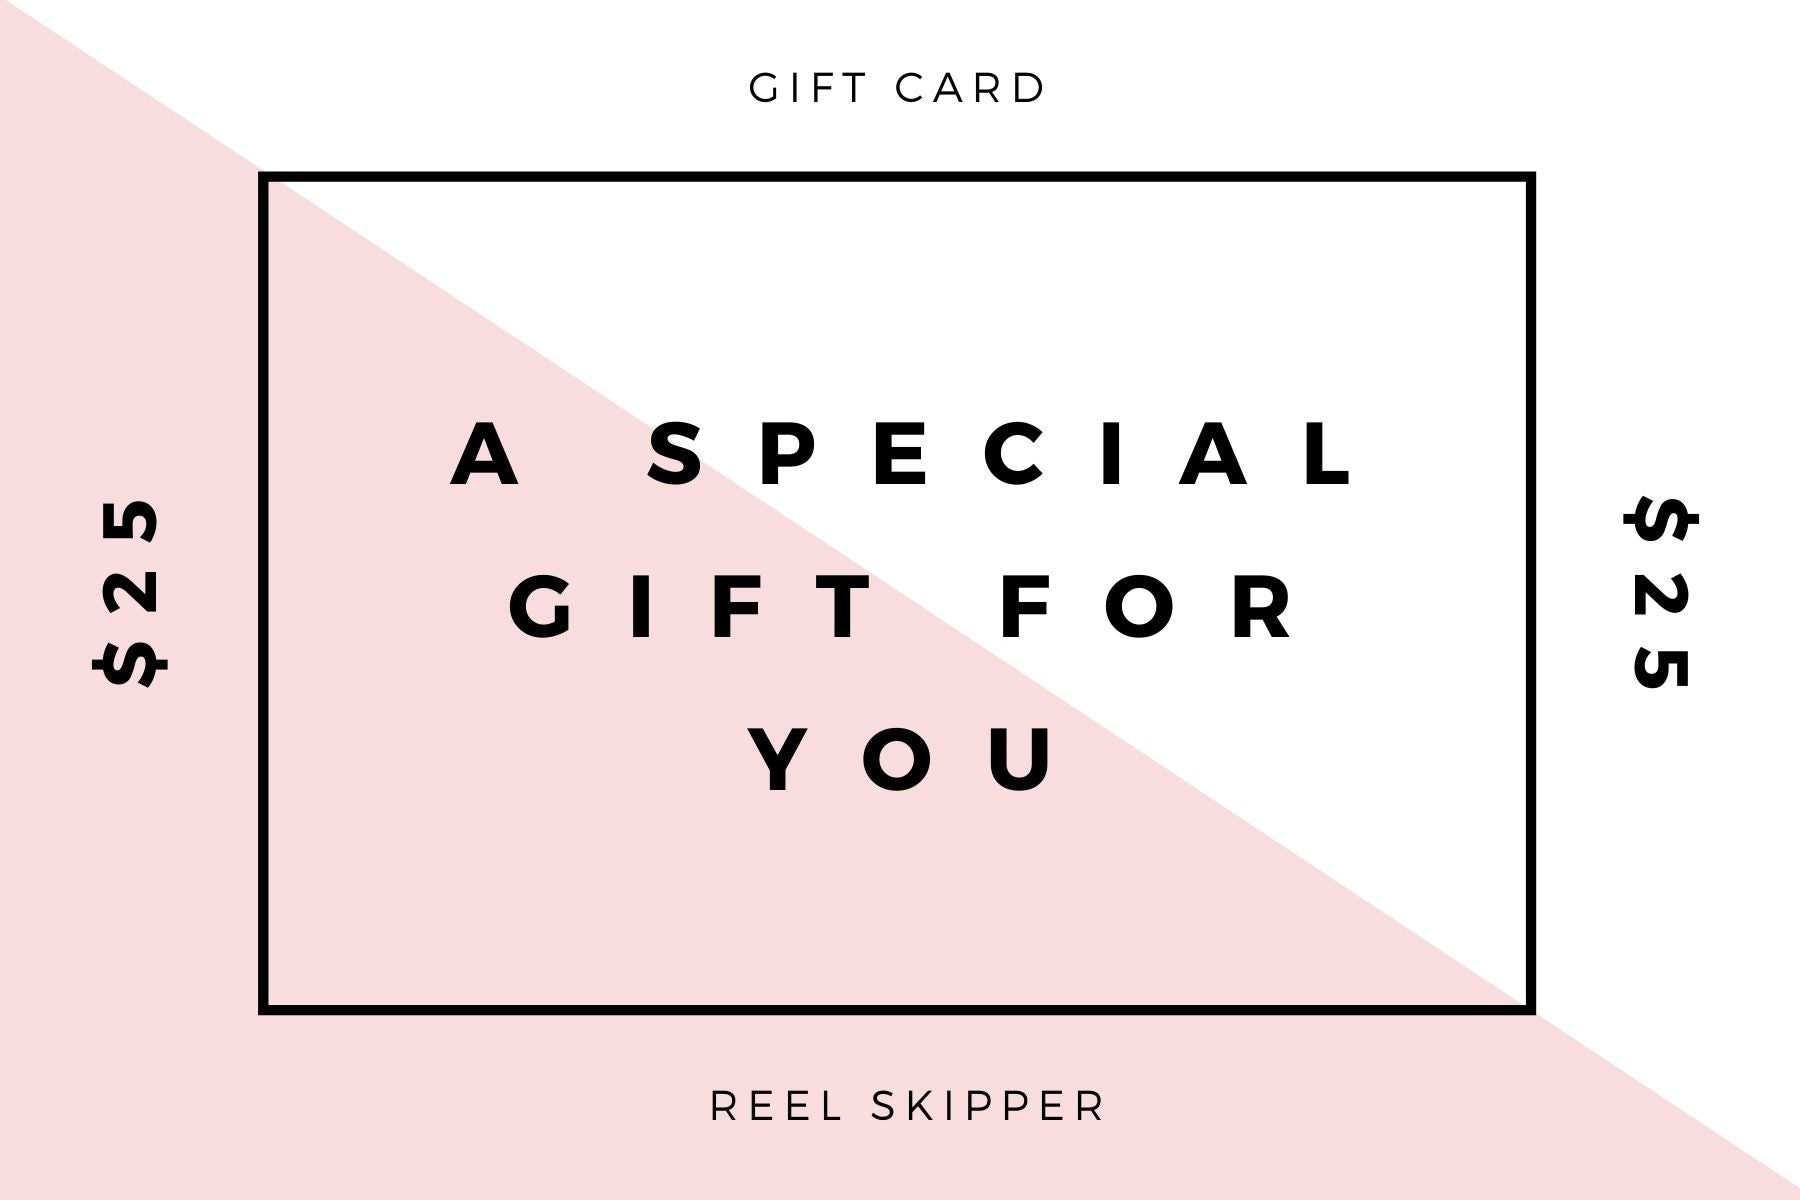 Reel Skipper Gift Card